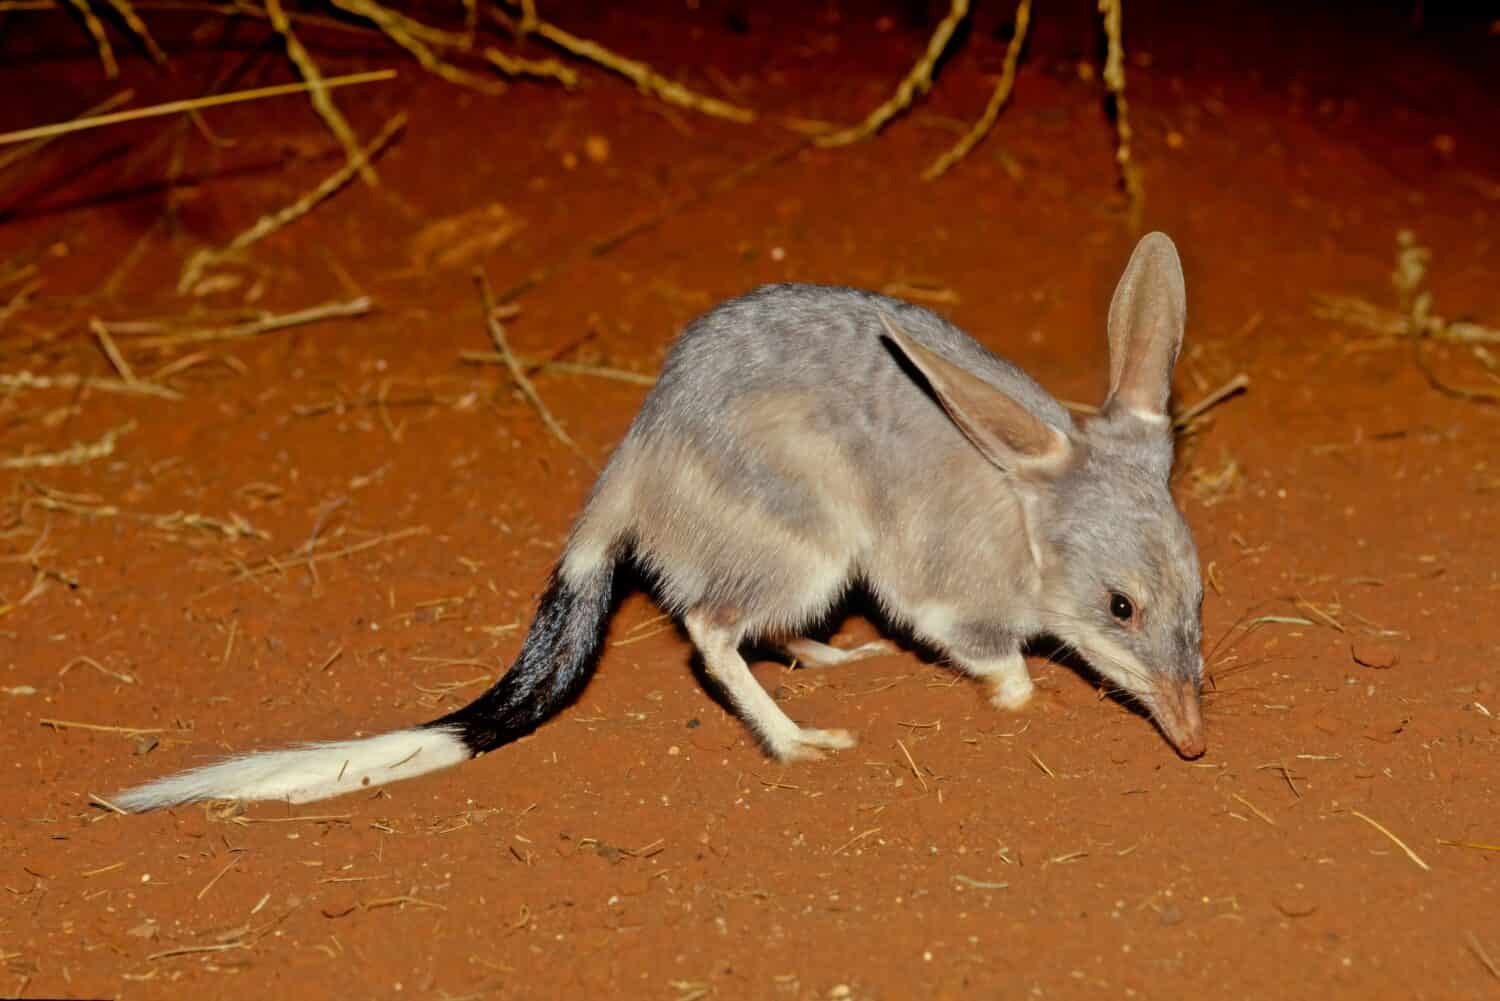 Macrotis è un genere di onnivori marsupiali che vivono nel deserto noti come bilbies o conigli-bandicoot;  sono membri dell'ordine Peramelemorphia.